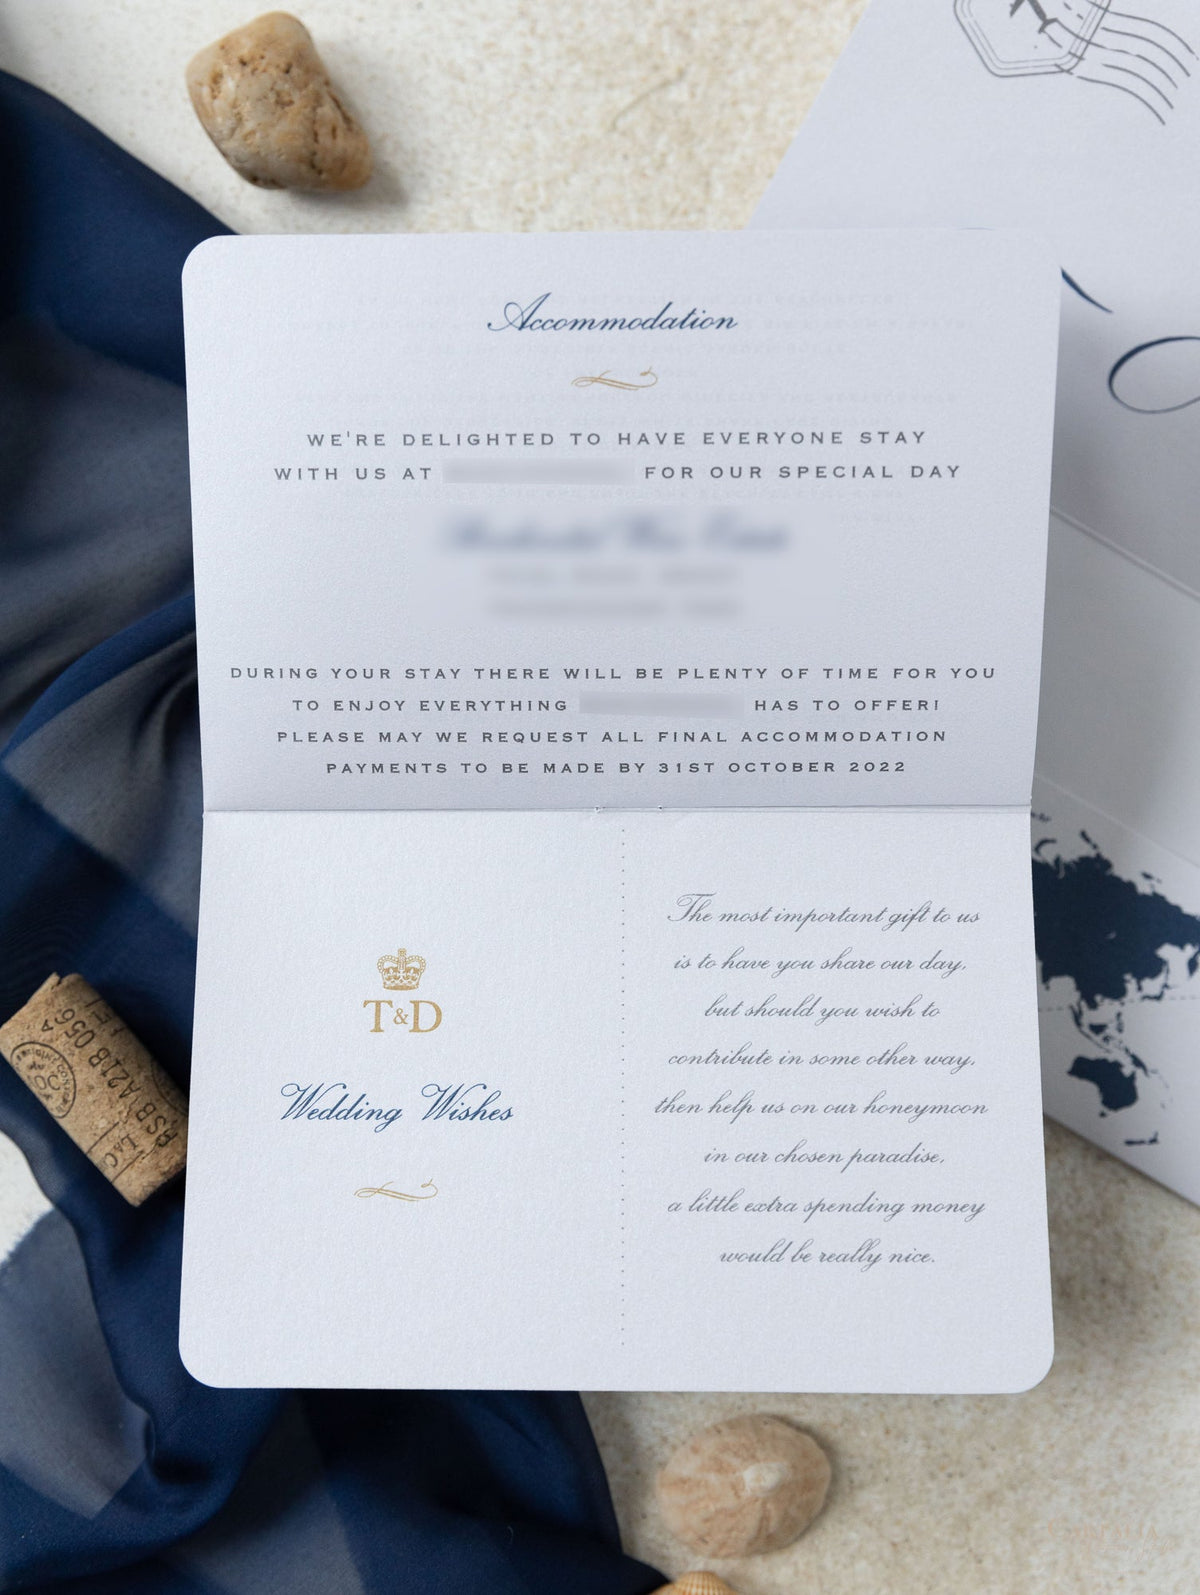 Portafoglio da viaggio blu navy e oro: lussuoso invito per passaporto di nozze in tasca e tag per specchio